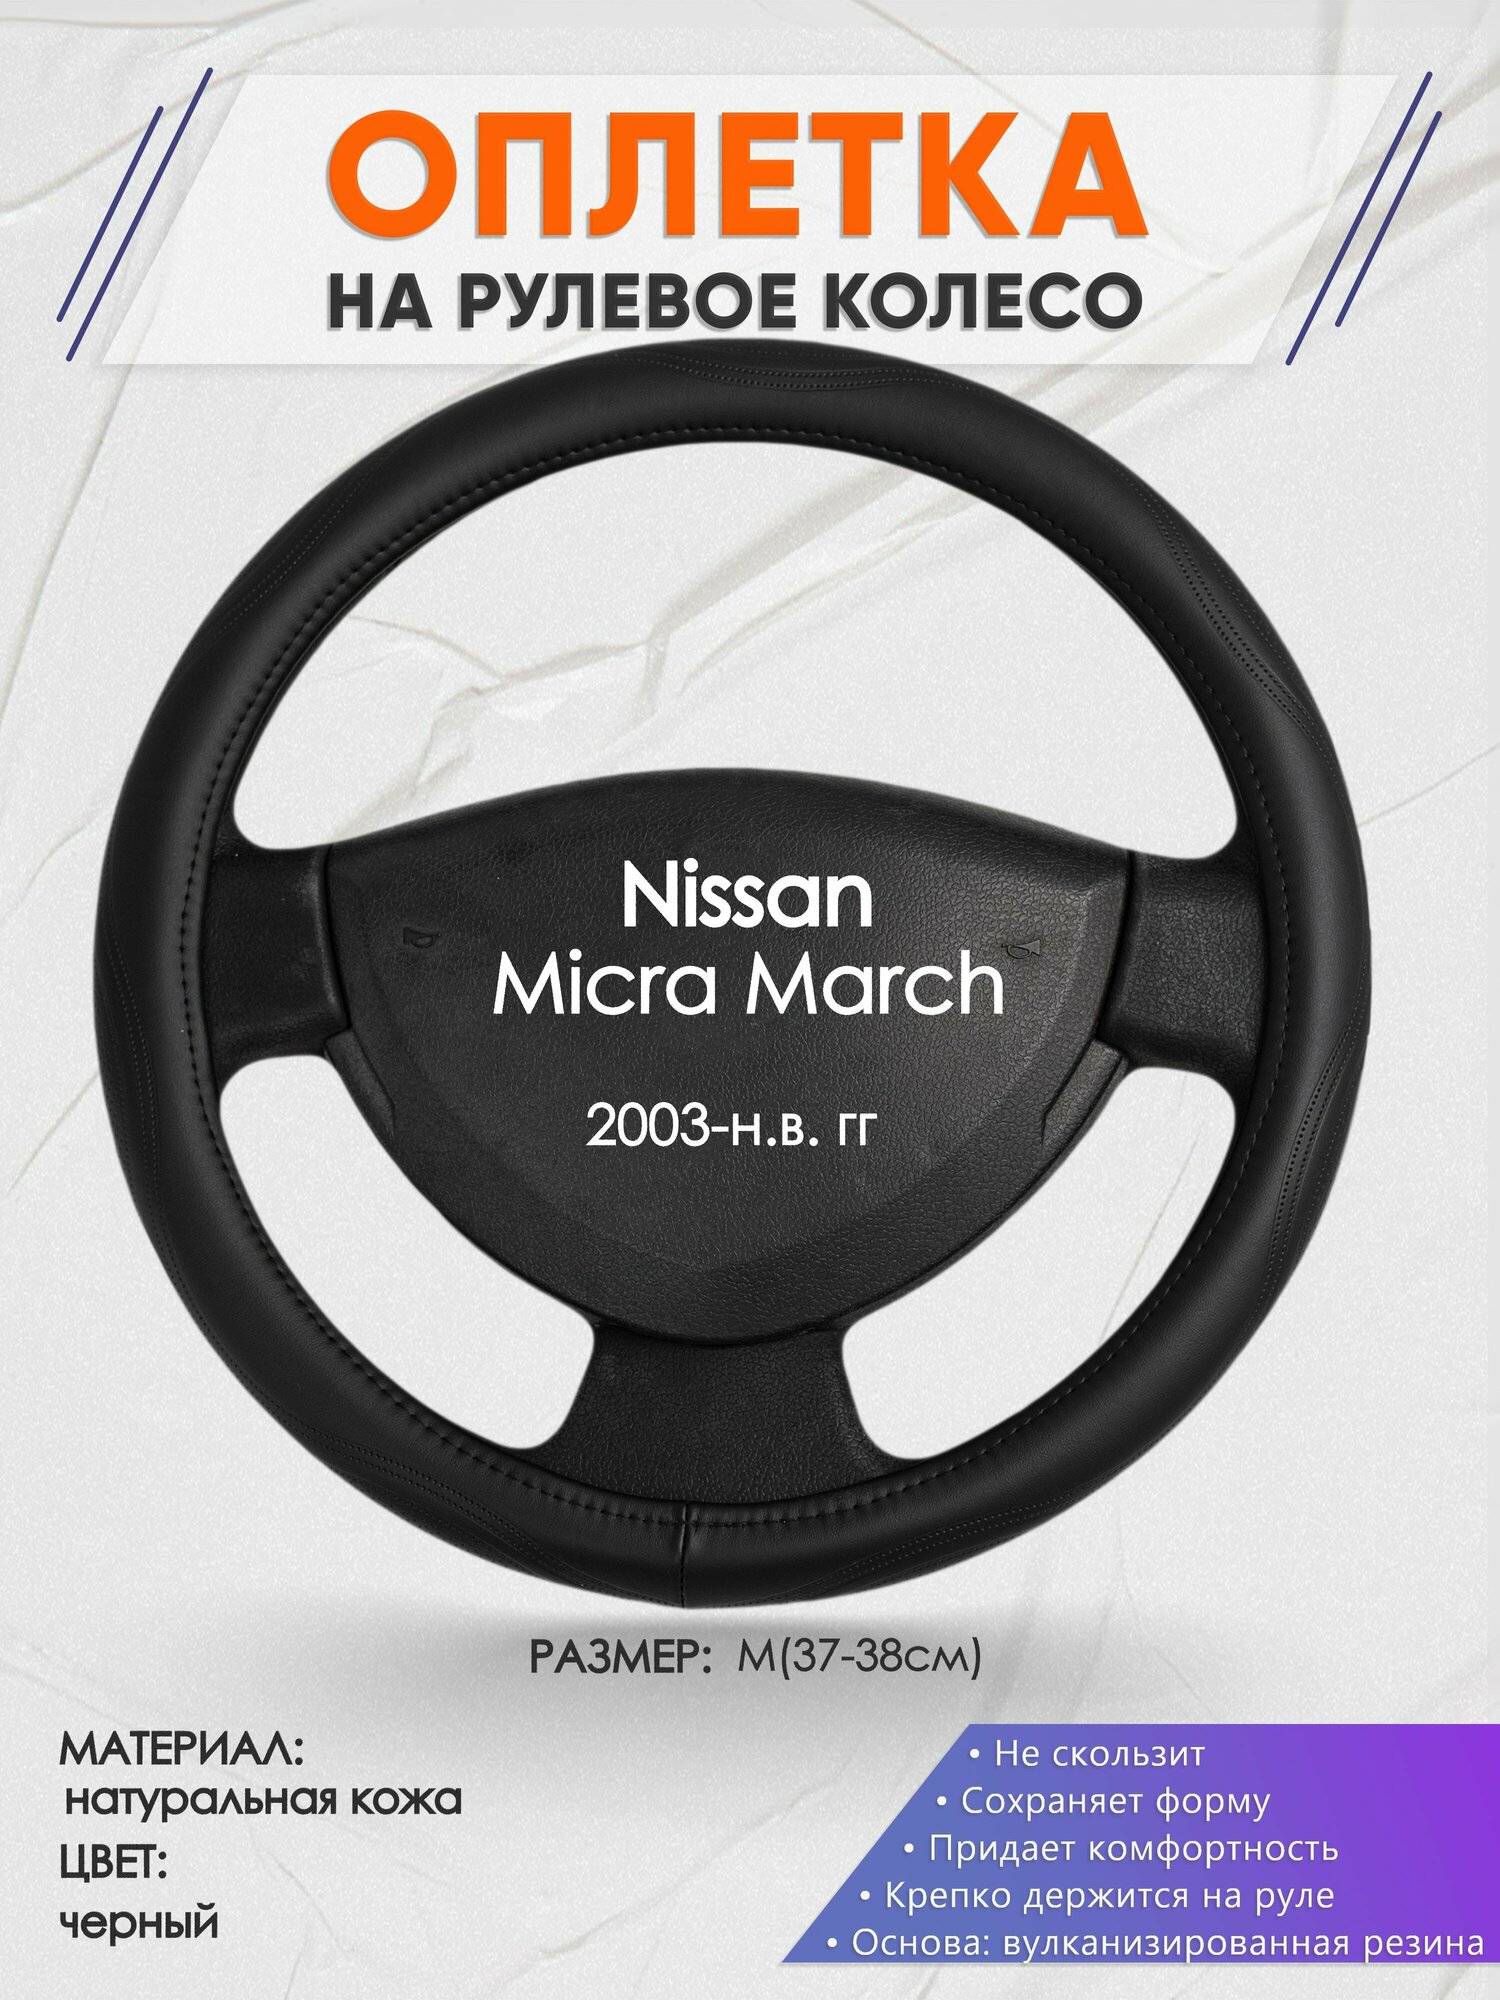 Оплетка на руль для Nissan Micra March(Ниссан Микра) 2003-н. в, M(37-38см), Натуральная кожа 29